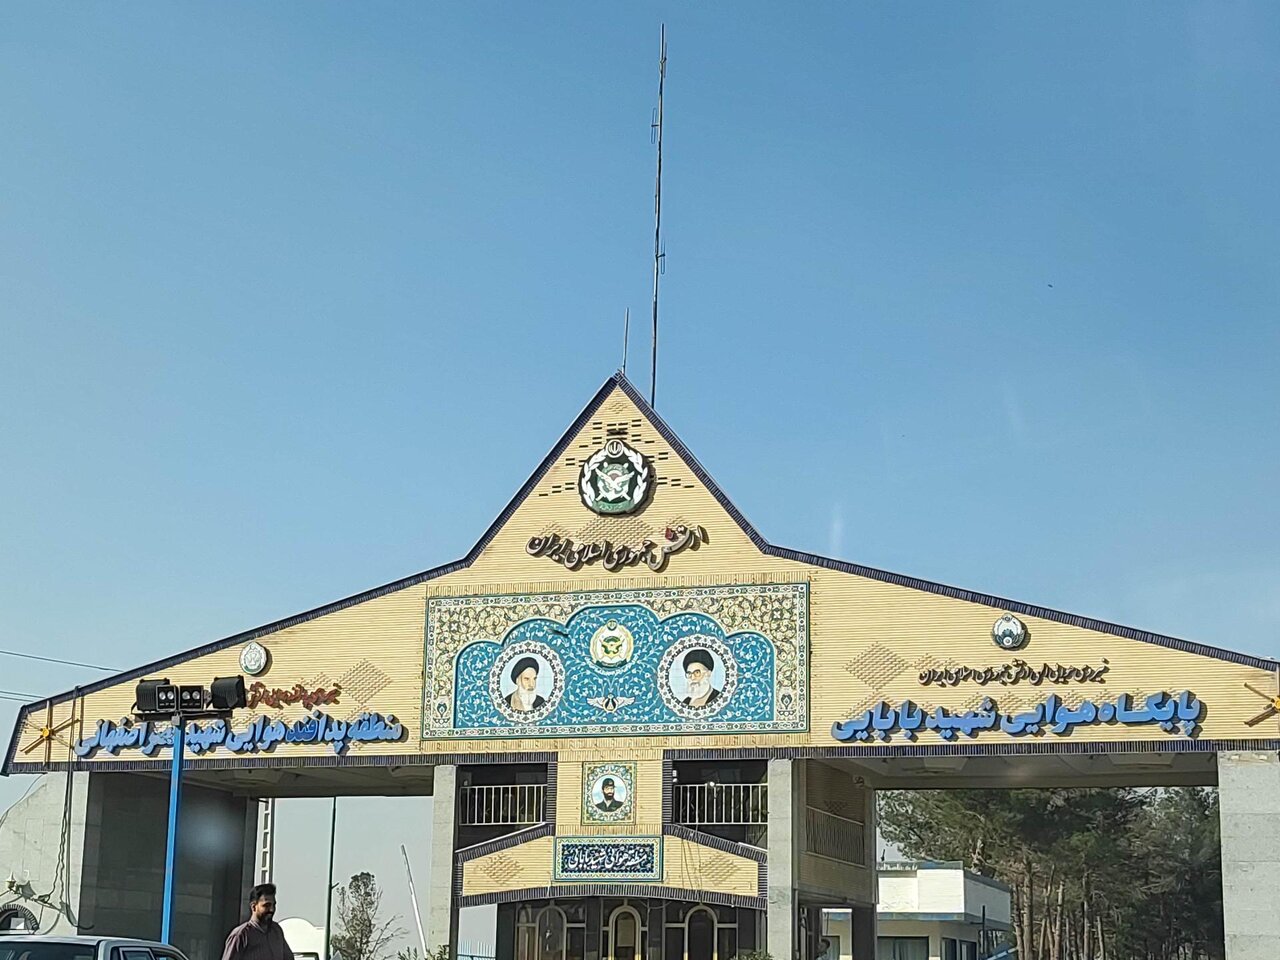 تسنیم: فرودگاه شکاری اصفهان در امنیت کامل است /مردم اصفهان در صف خرید حلیم هستند یا ورزش صبحگاهی می کنند /وضعیت غیرعادی نیست